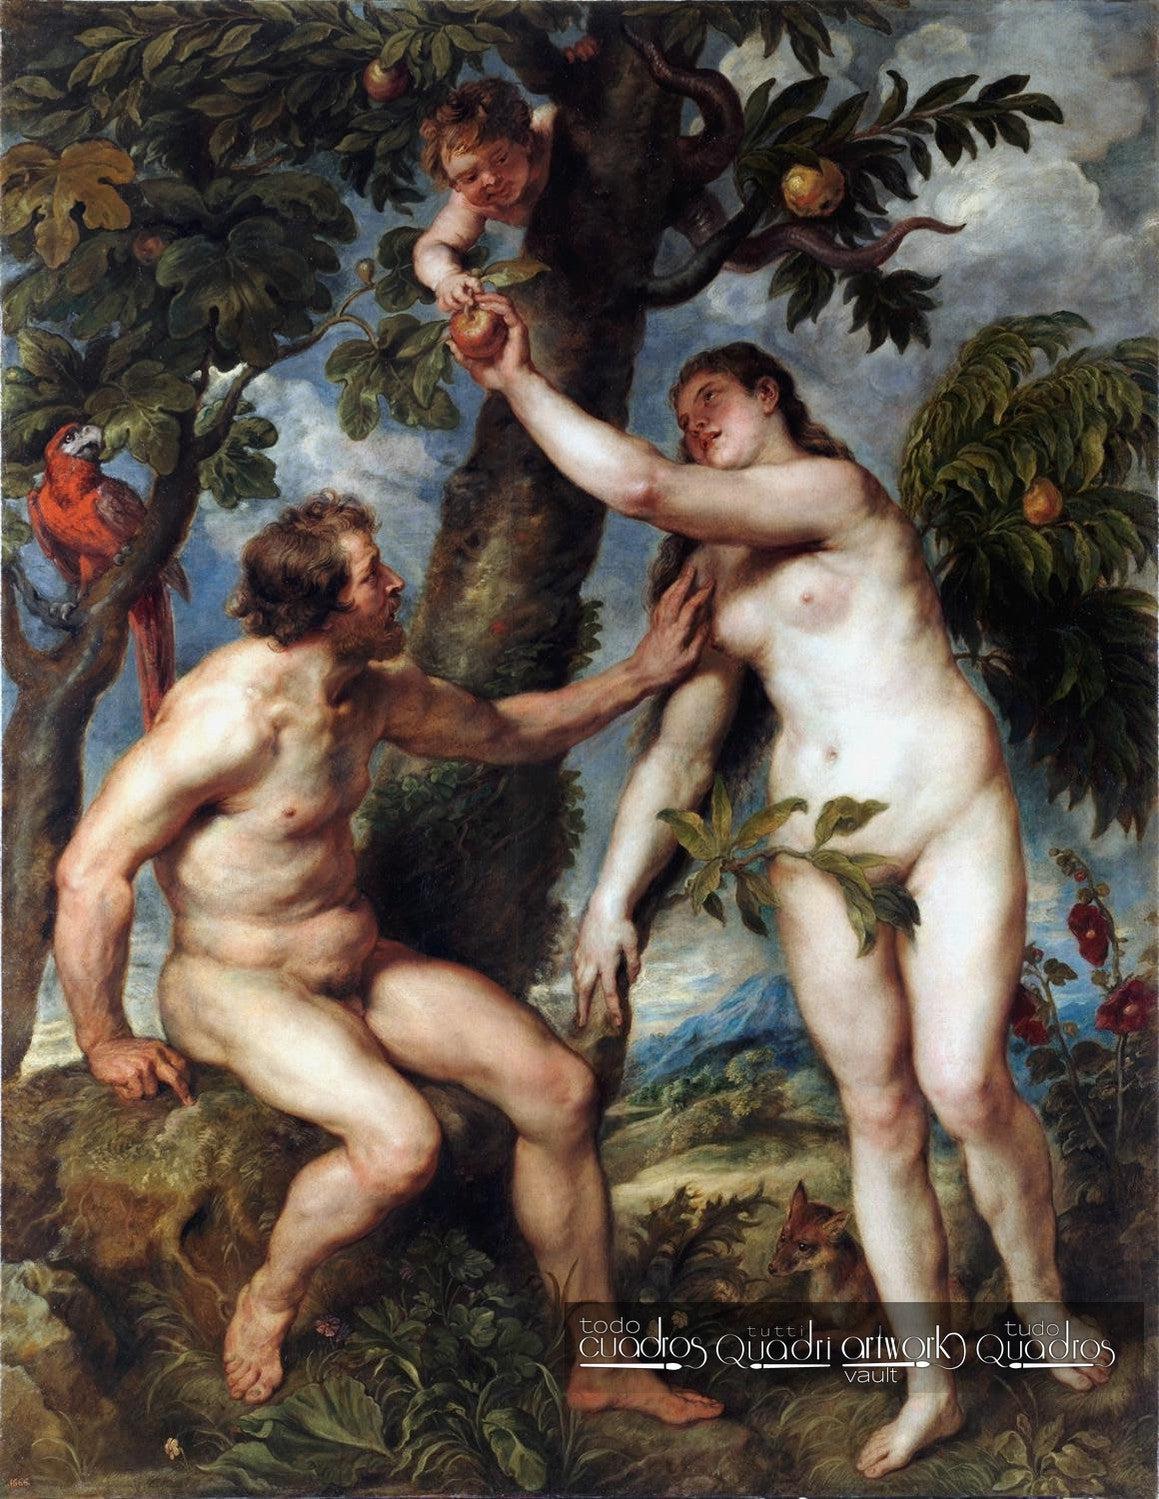 Adão e Eva, Rubens